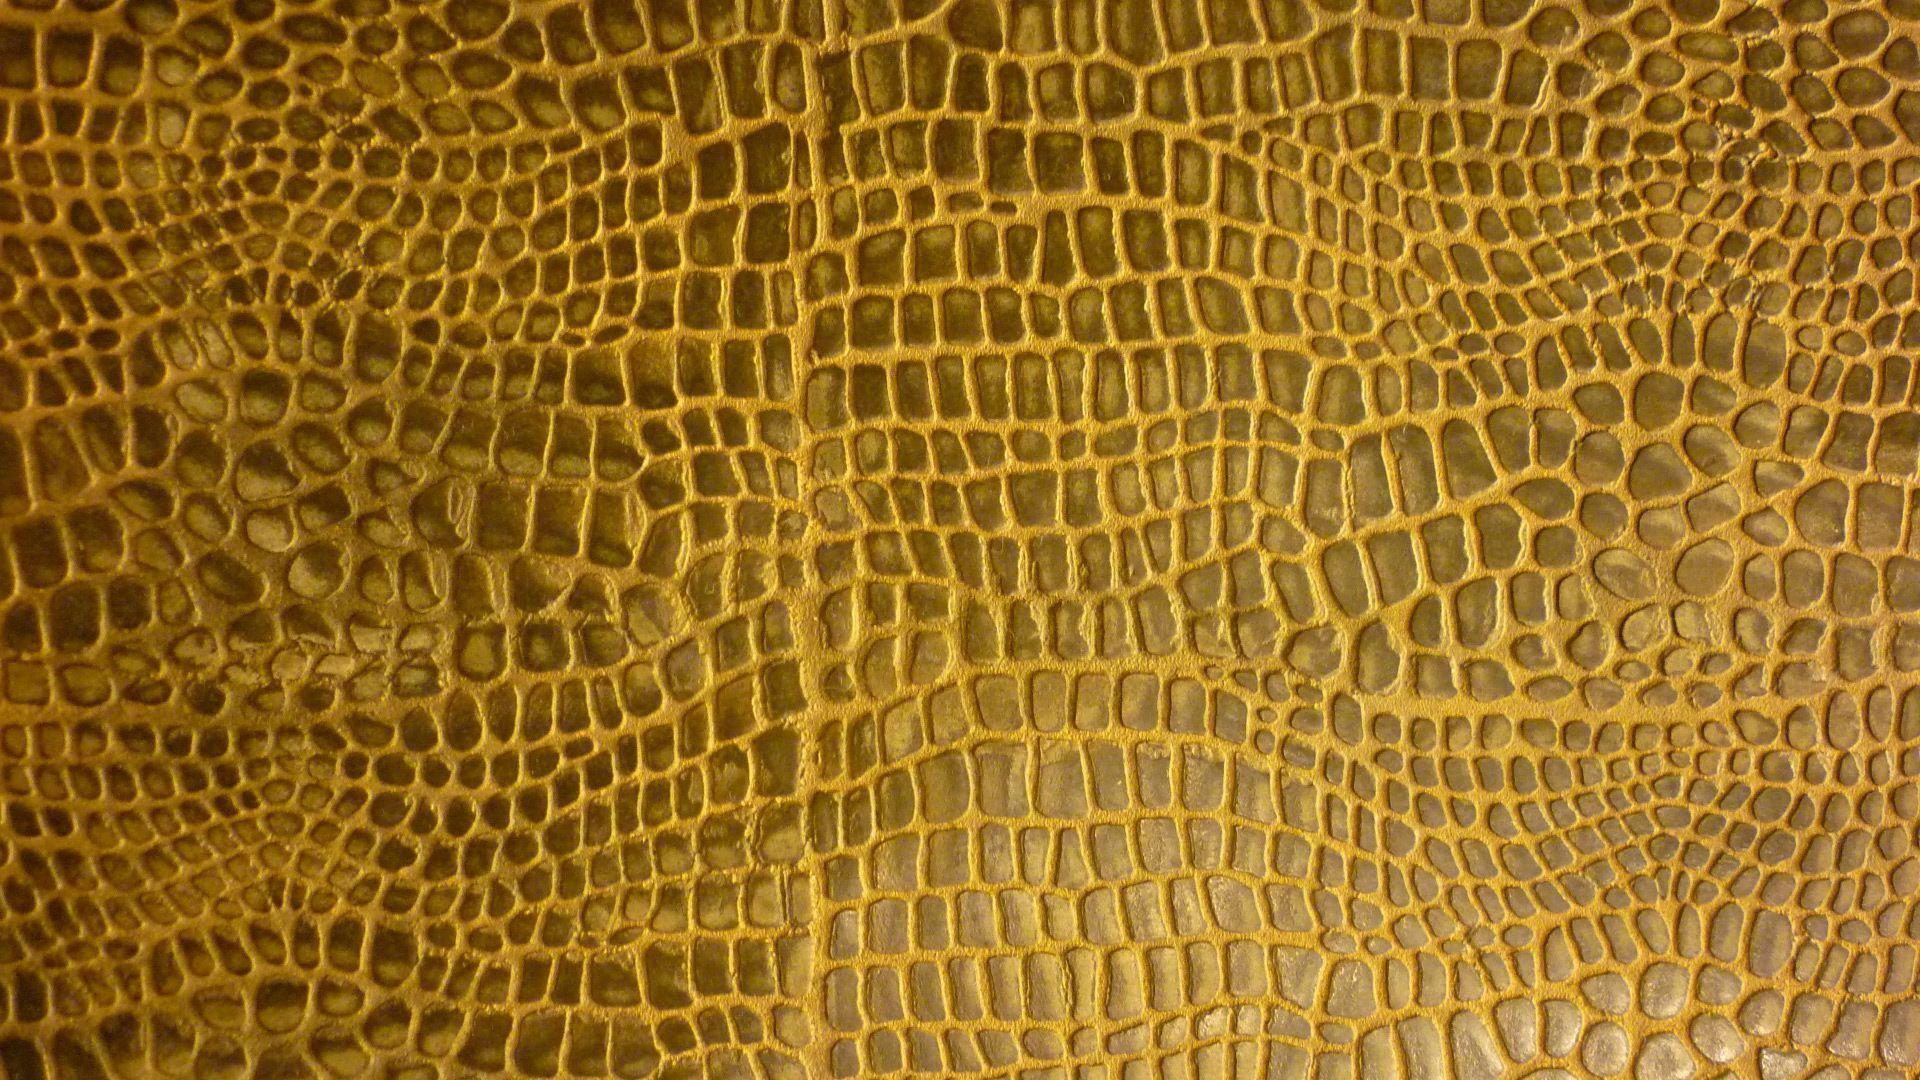 Fine Décor  Python Snake Skin Wallpaper  Snake Print Wallpaper  Snakeskin  Wallpaper